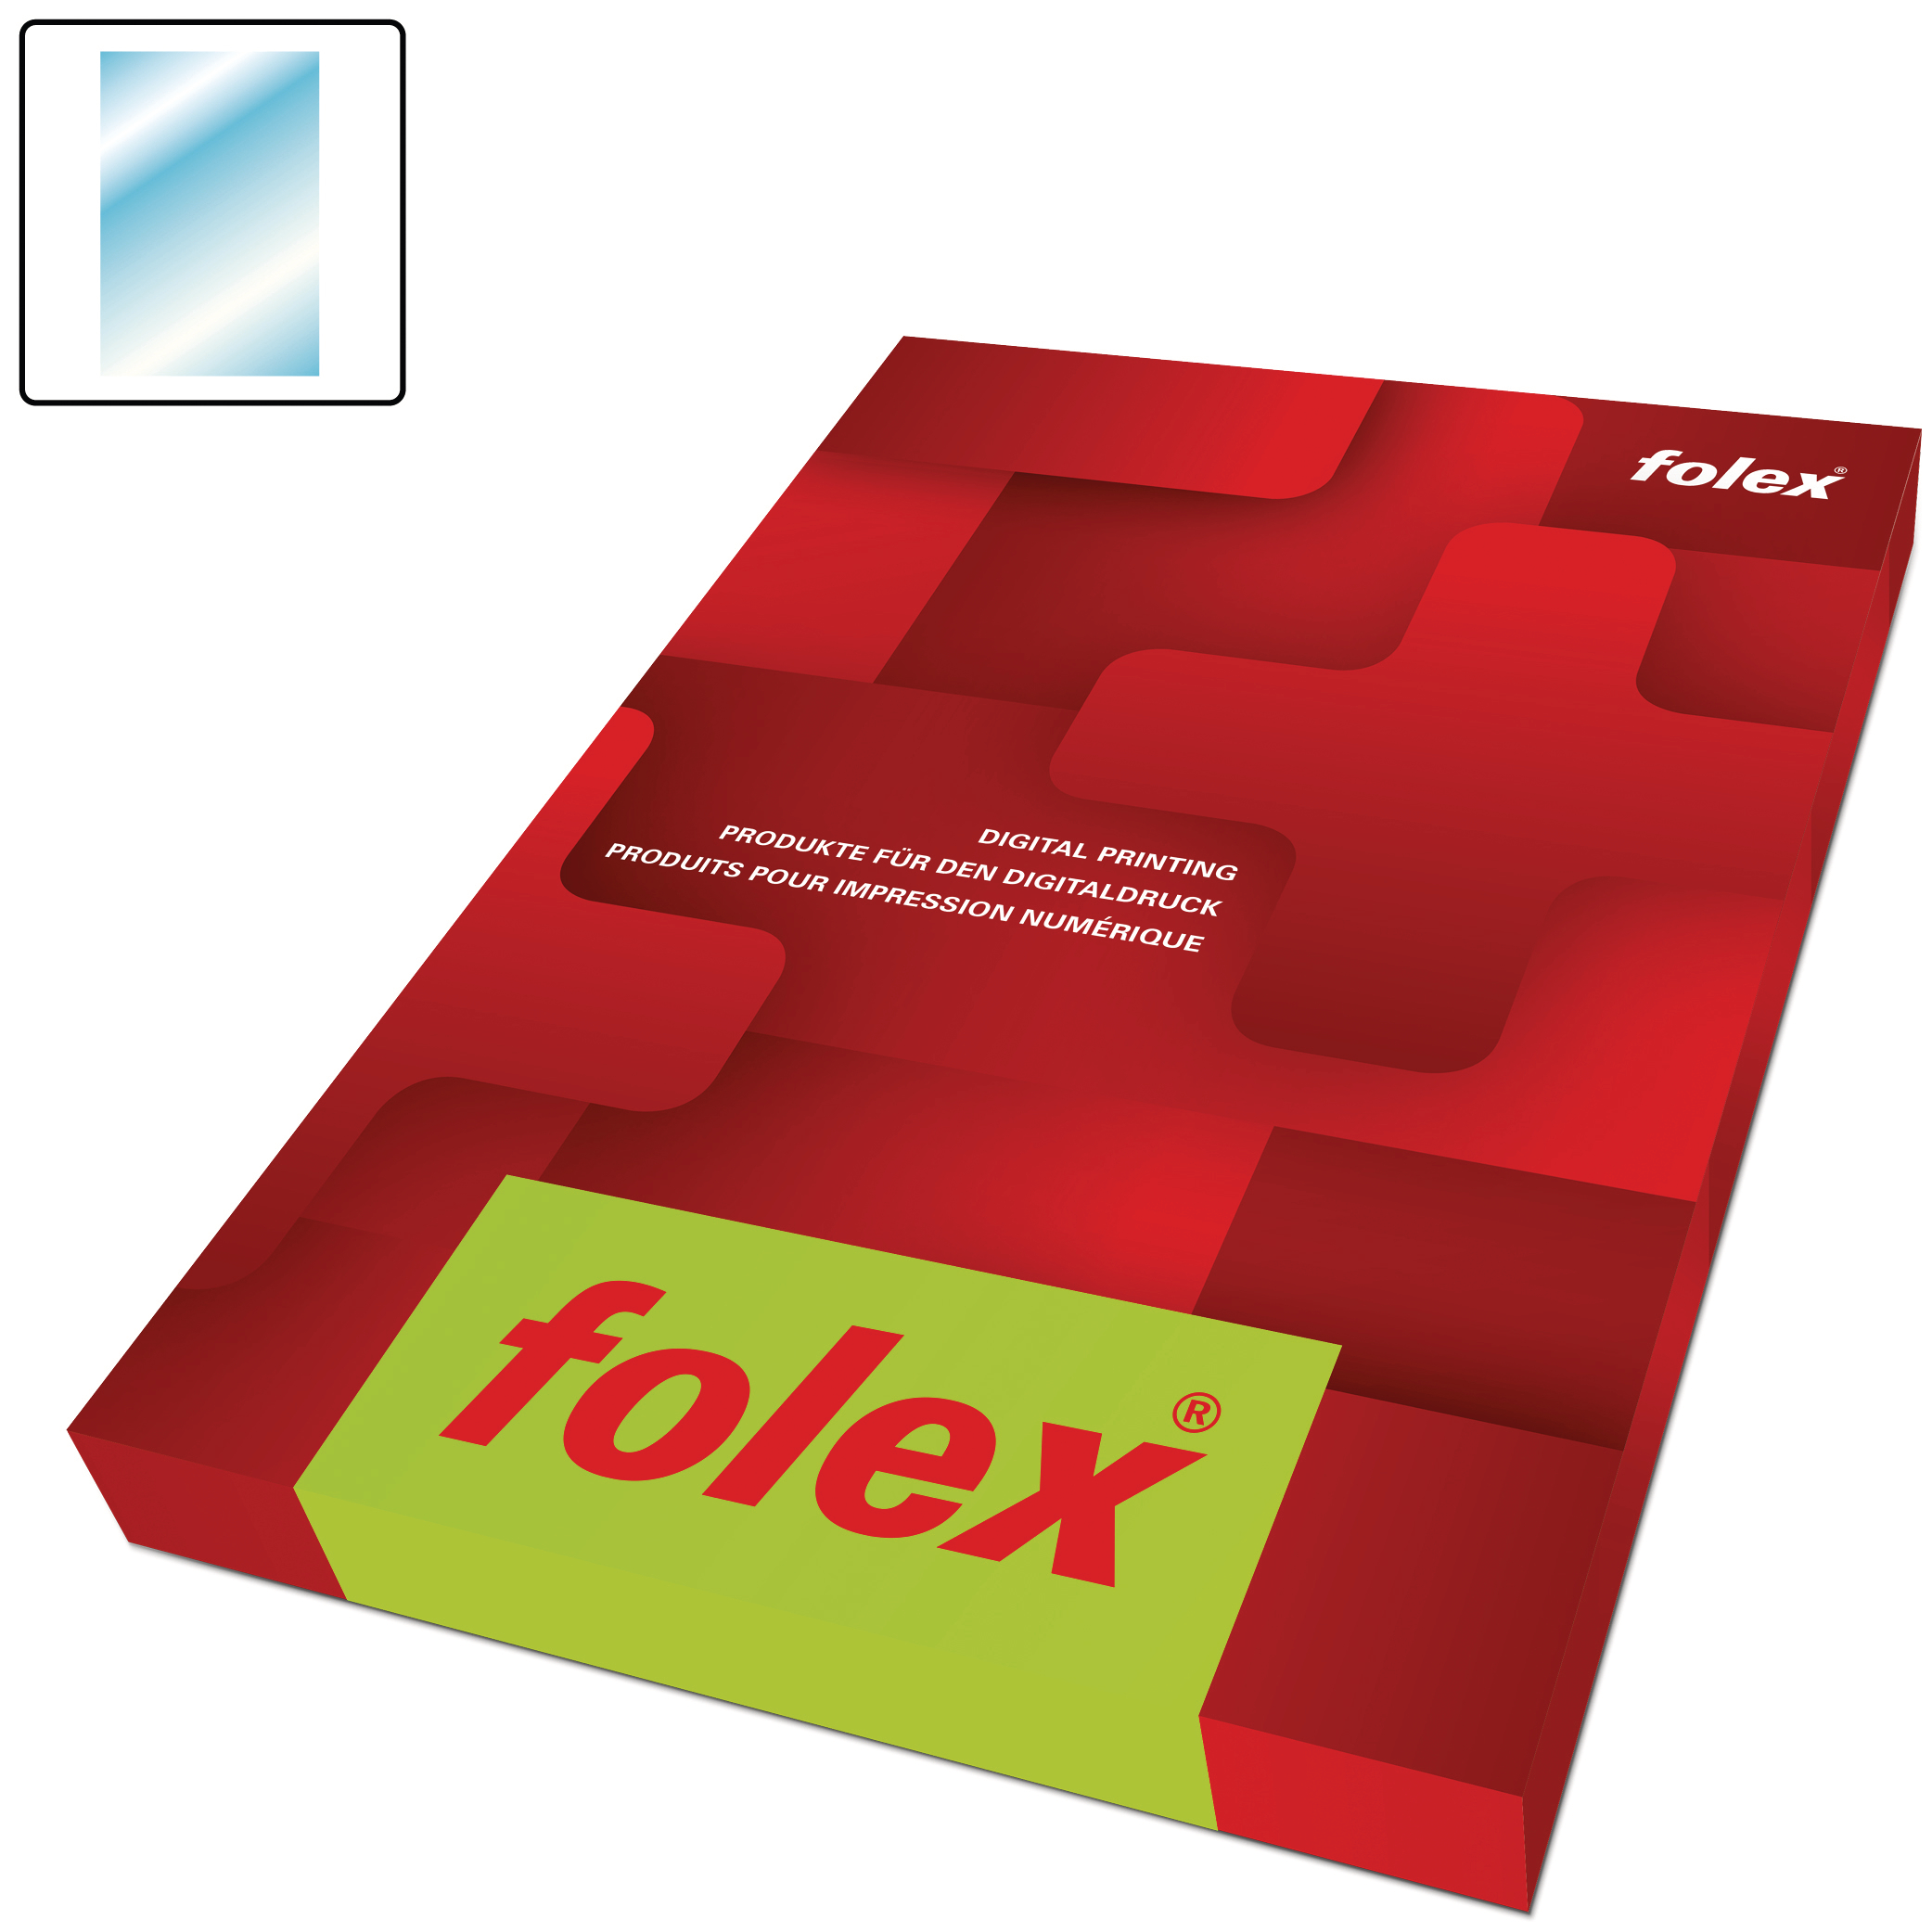 FOLEX Ink Jet Universal-Film A4 BG-32+ 50 feuilles 50 feuilles